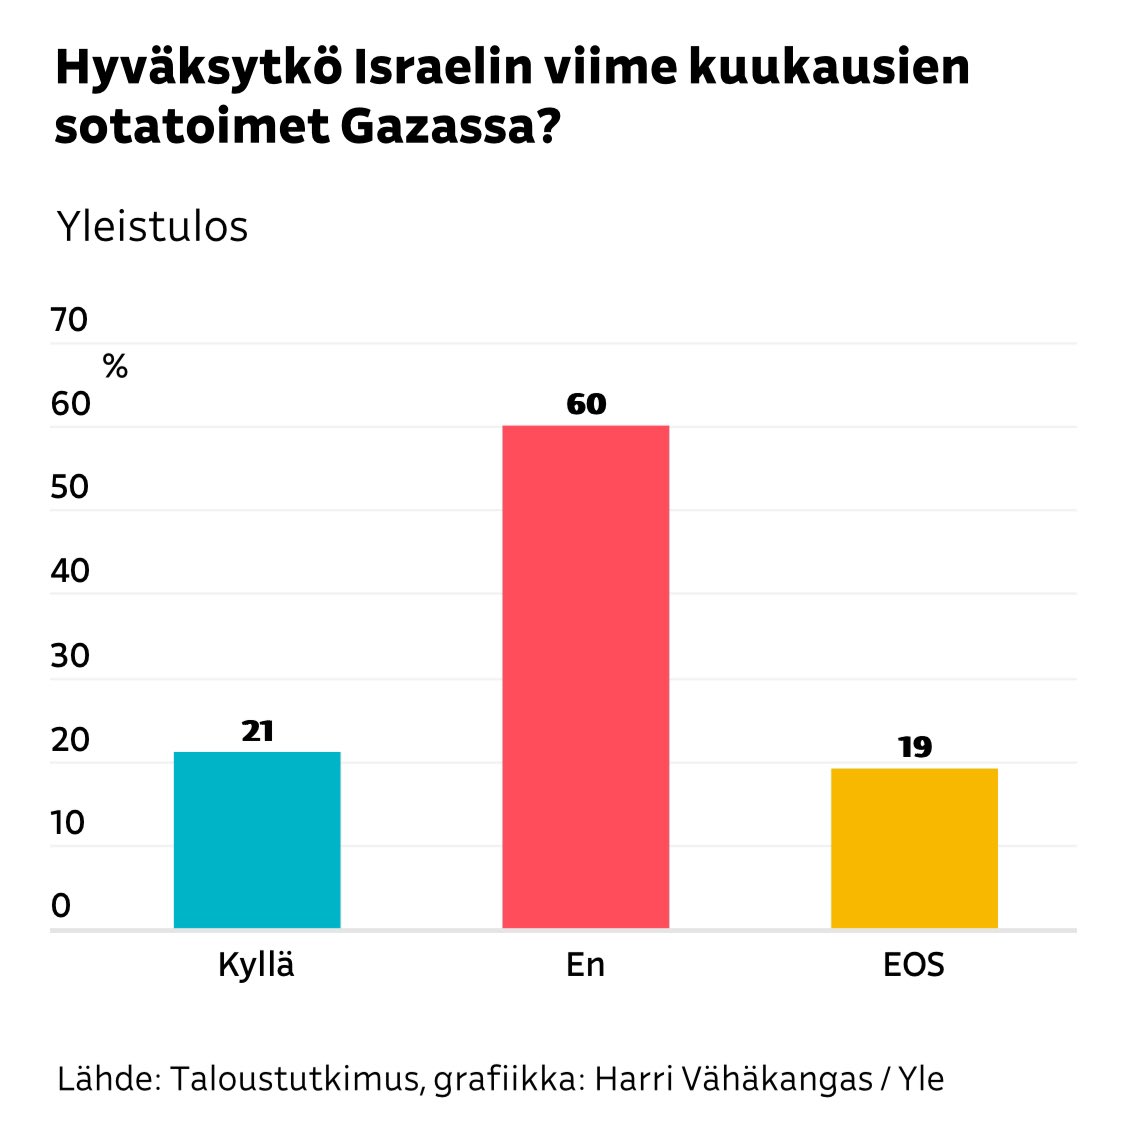 Jälleen yksi esimerkki siitä, miten vääristyneen kuvan twitteristä saa. Vain 21% suomalaisista hyväksyy Israelin sotatoimet Gazassa.